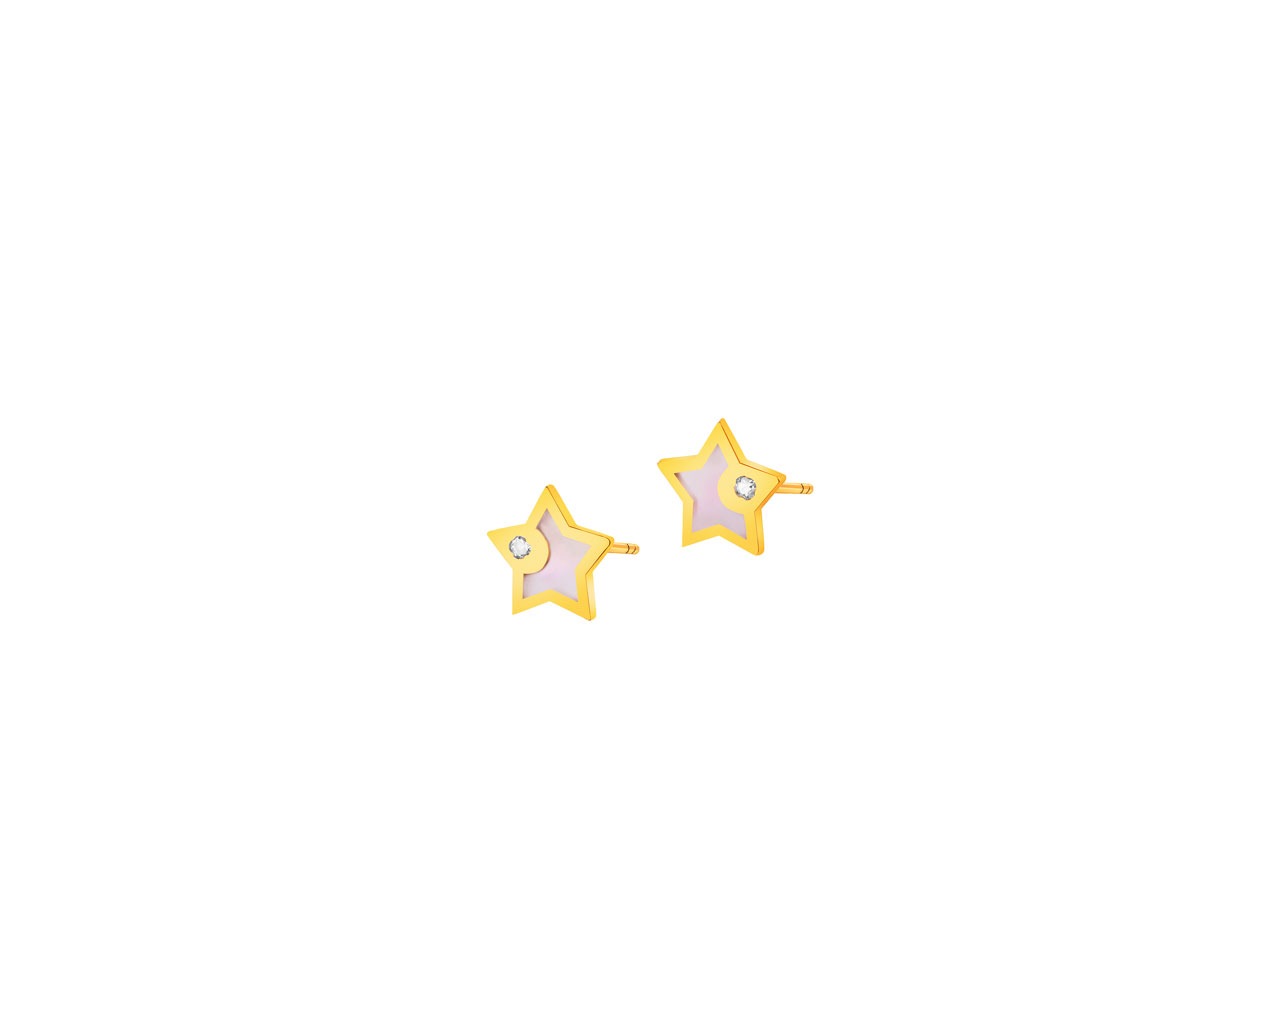 Złote kolczyki z masą perłową i cyrkoniami - gwiazdy